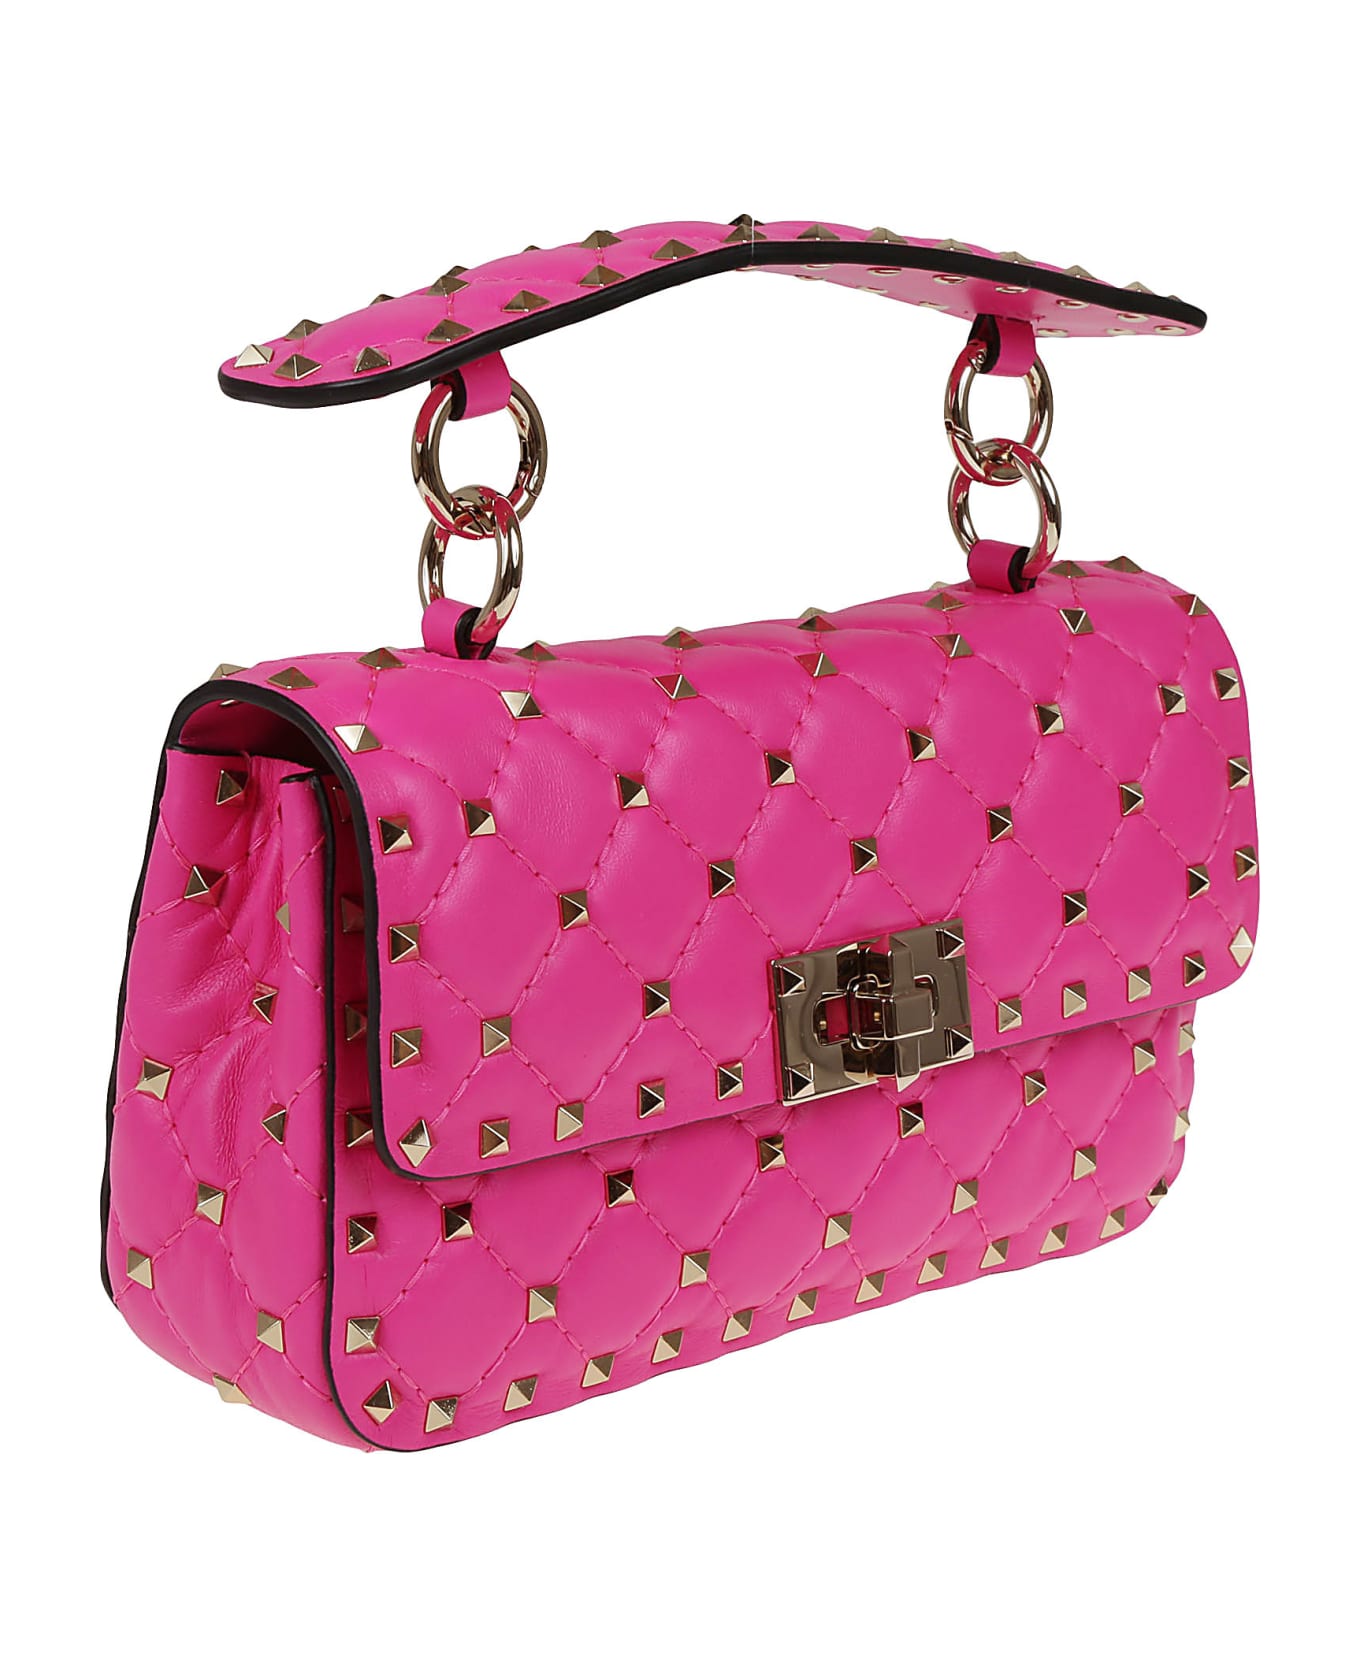 Valentino Garavani Small Shoulder Bag Rockstud Spike - Uwt Pink Pp トートバッグ